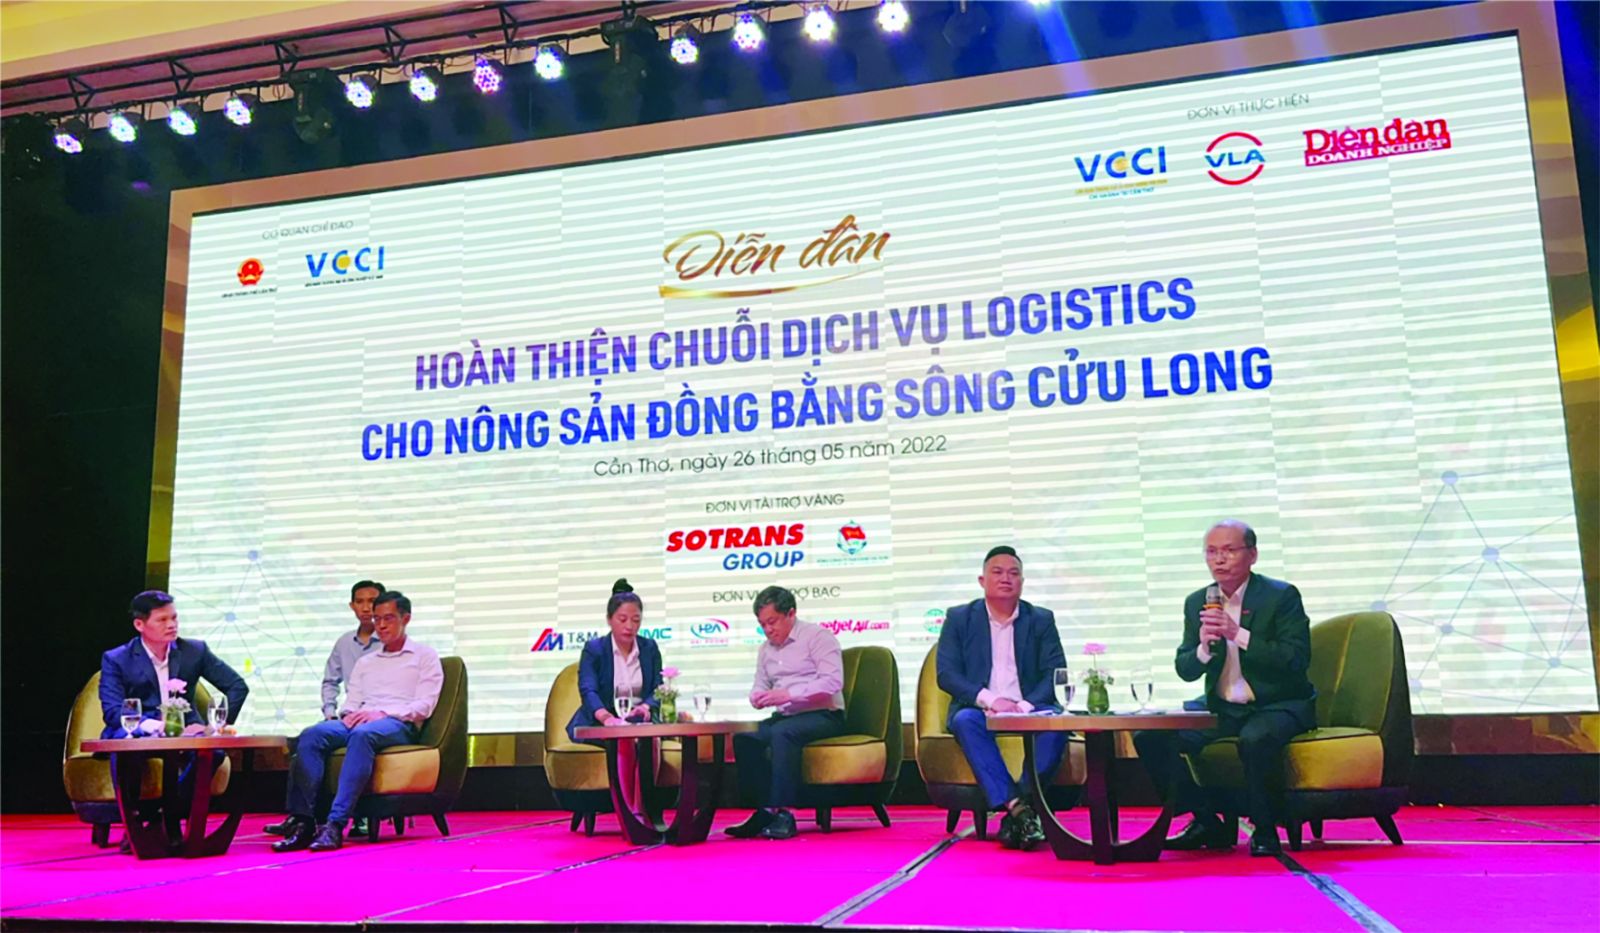  Diễn đàn Hoàn thiện chuỗi dịch vụ logistics cho nông sản đồng bằng sông Cửu Long do VCCI Cần Thơ, Tạp chí Diễn đàn Doanh nghiệp và Hiệp hội Doanh nghiệp dịch vụ Logistics Việt Nam (VLA) tổ chức .